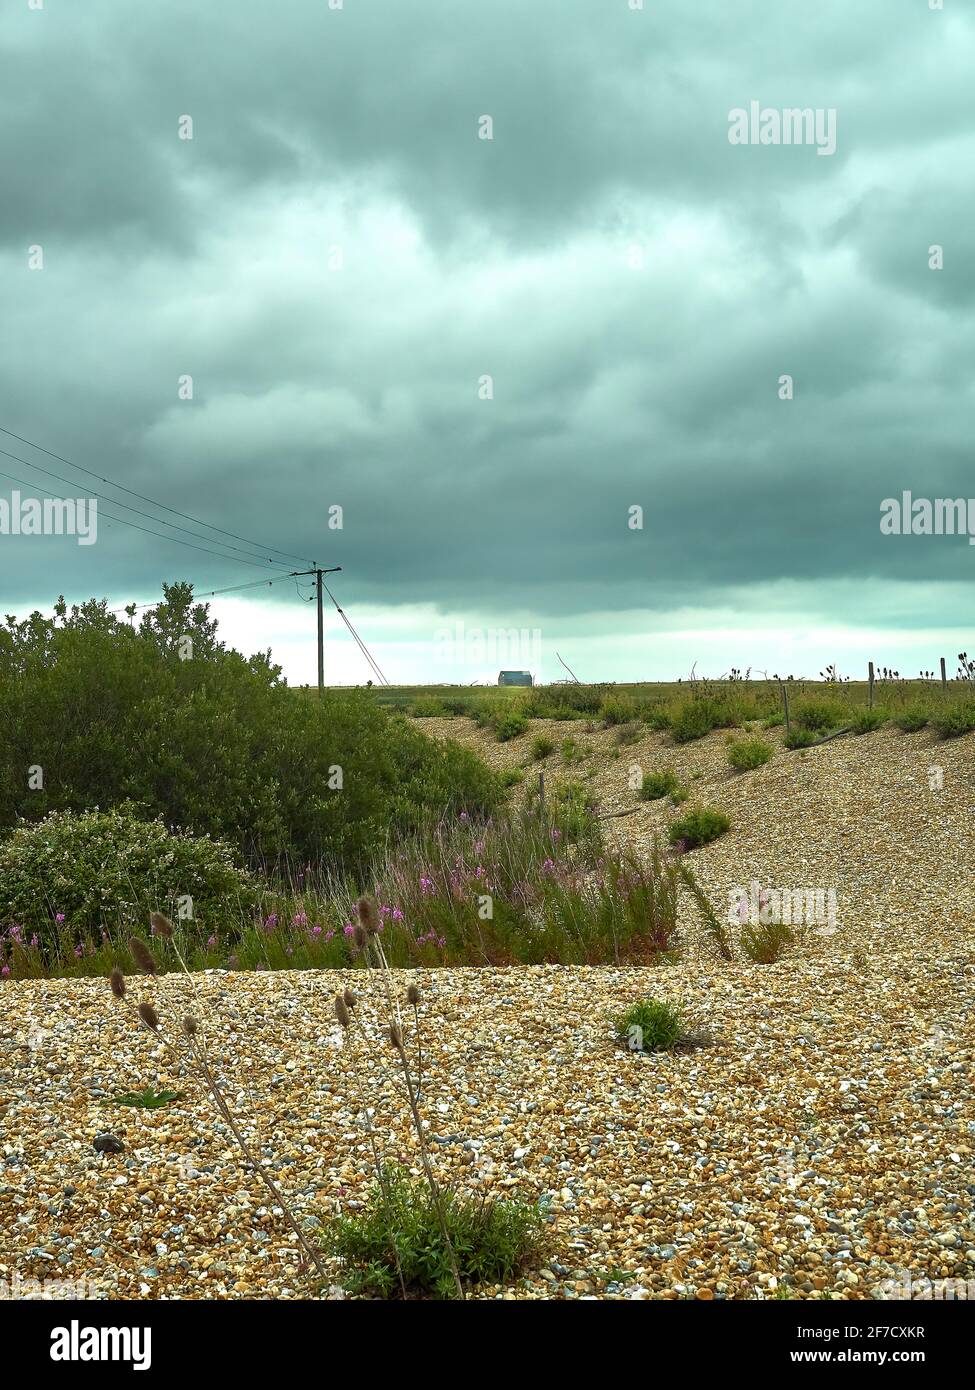 Verlassene Landschaft mit einem geschwungenen Kiesufer, das mit einem silhouettierten Telegrafenmast und einer verlassenen Rettungsbootstation zum Horizont zurückkehrt. Stockfoto